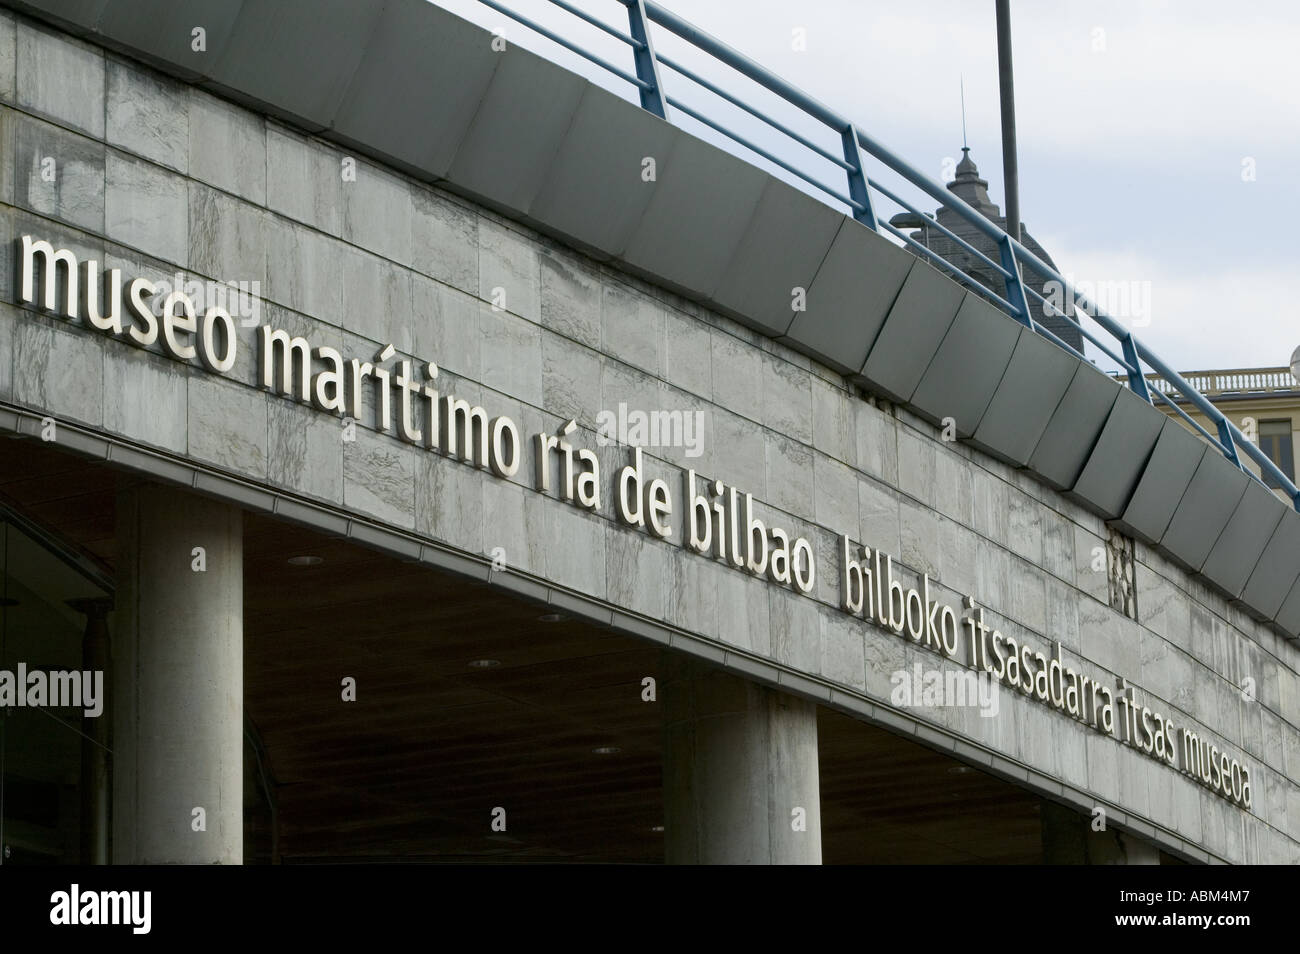 Entrée au musée maritime de Bilbao (museo maritimo ria de Bilbao), Bilbao Pais Vasco (Pays Basque) espagne Europe. Banque D'Images